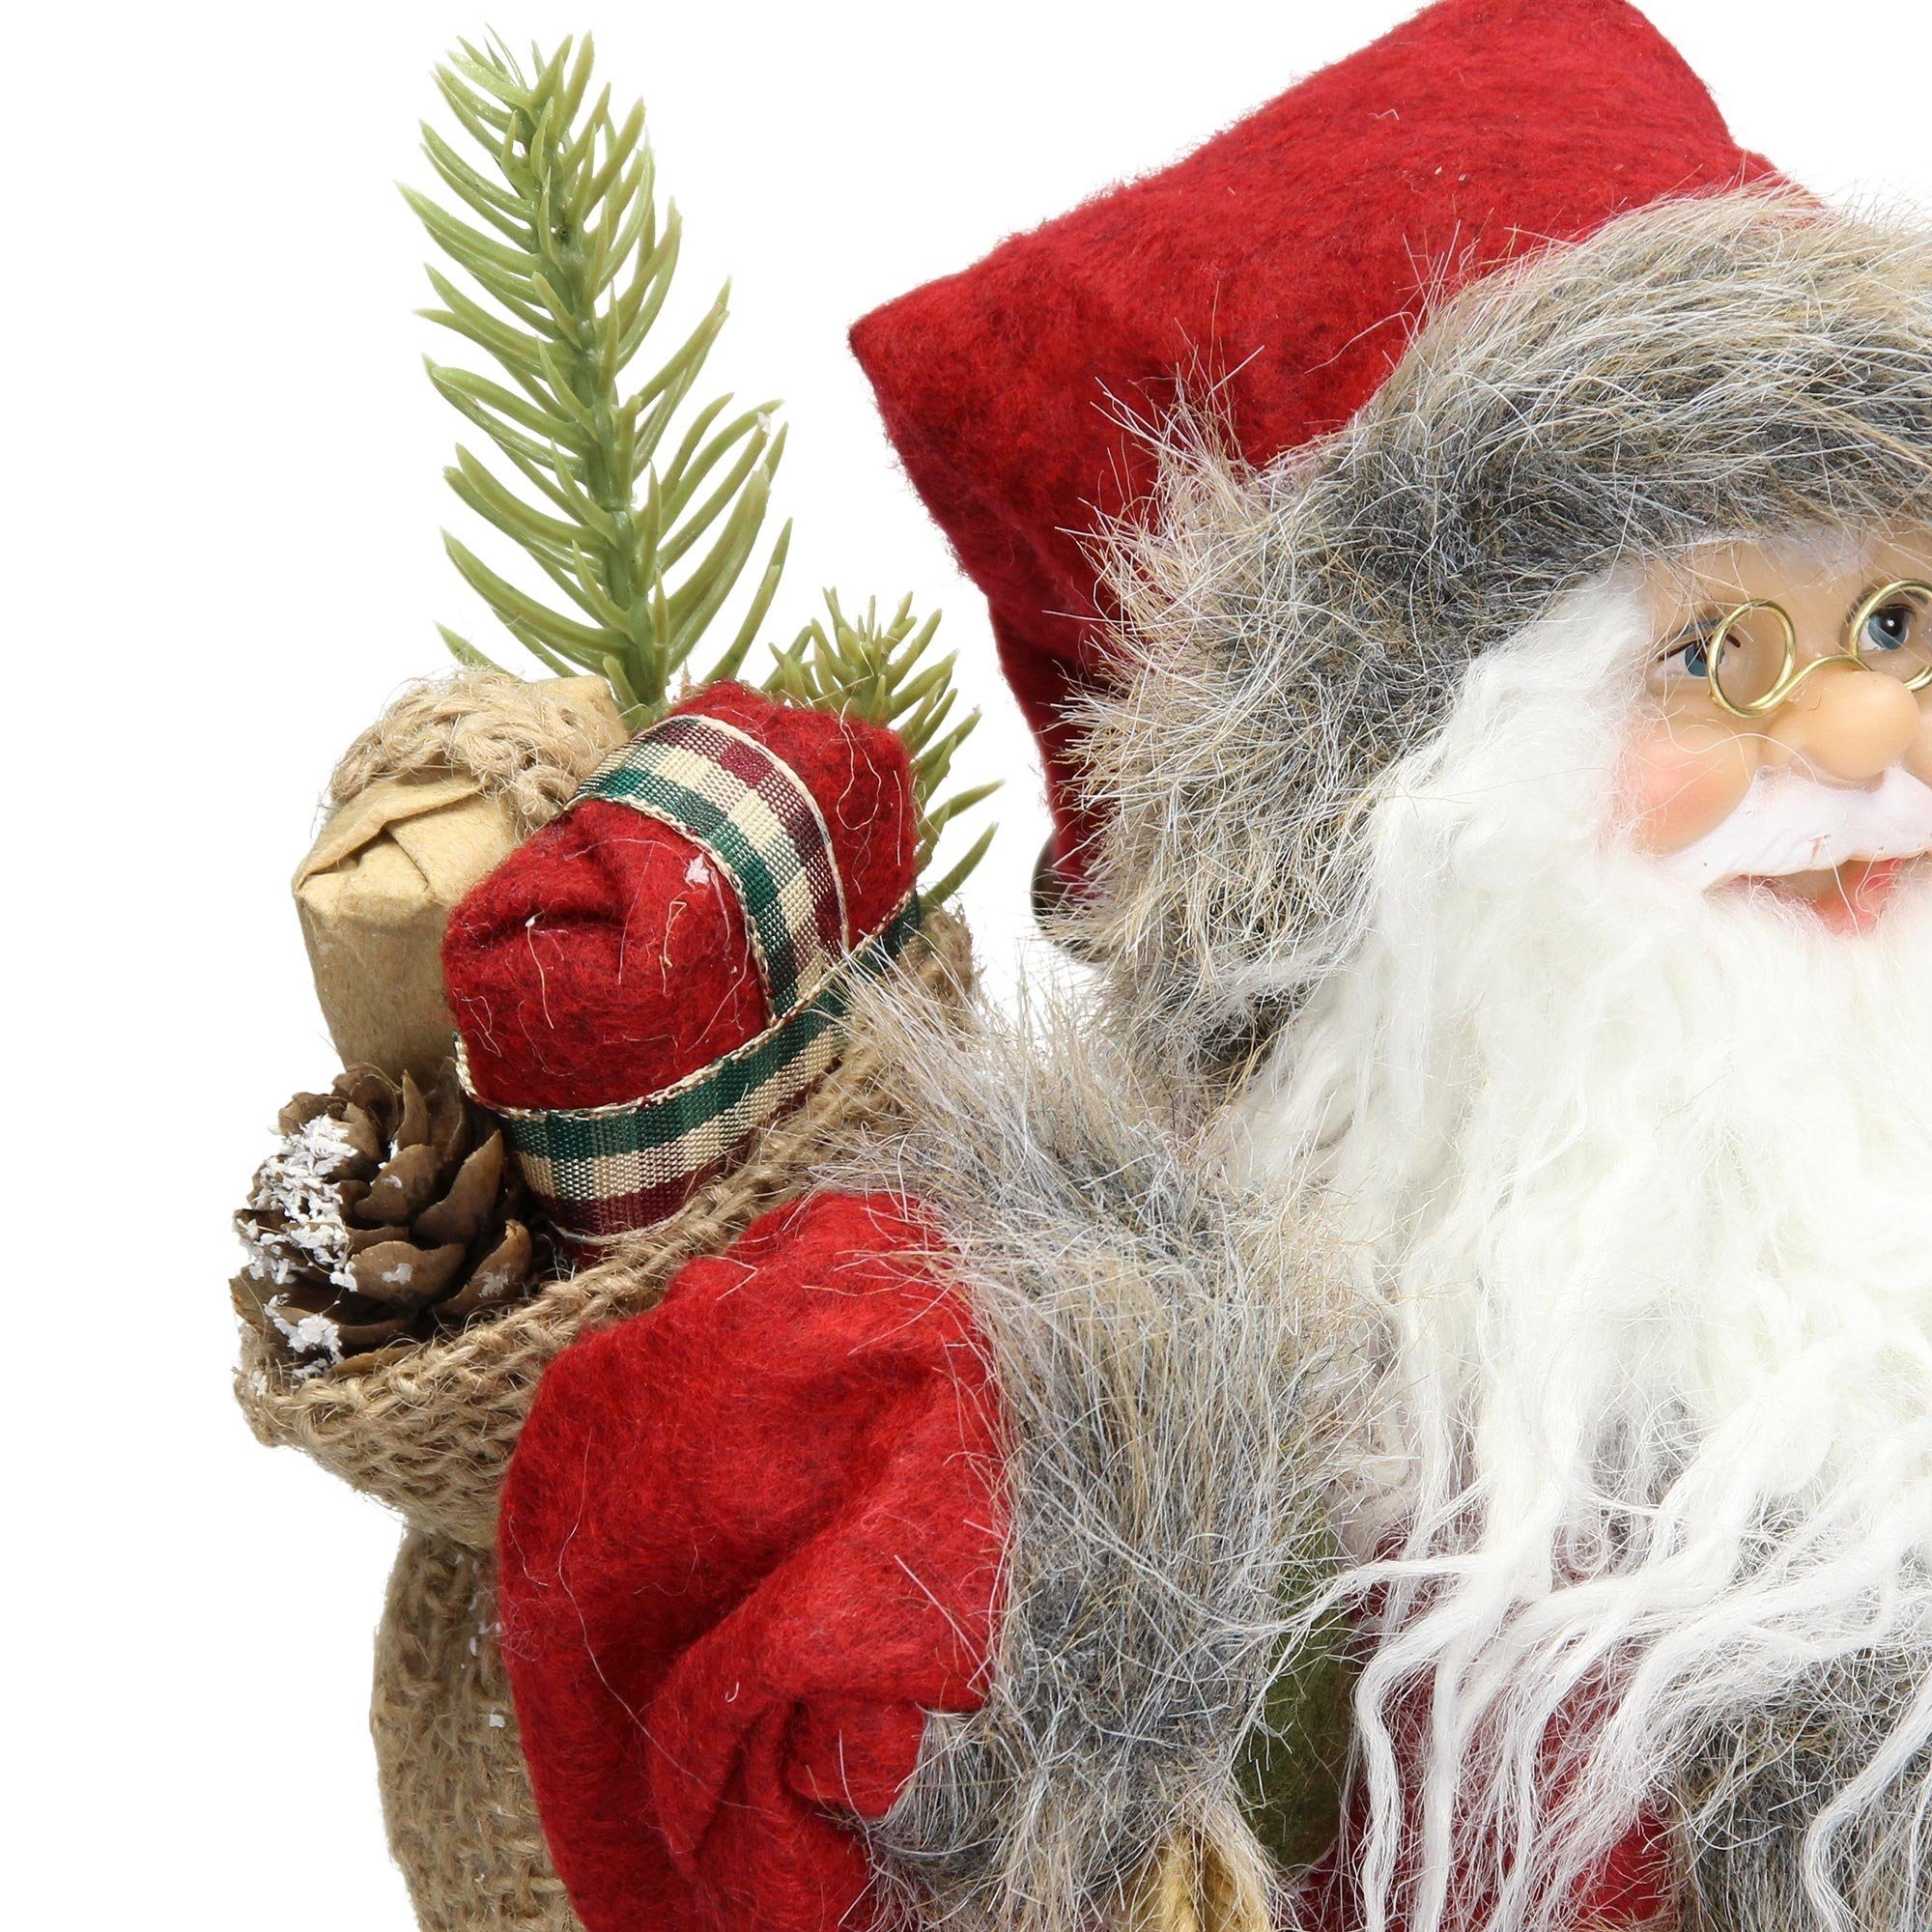 Homevibes ECD mit Geschenkesack cm Mantel 37 Deko-Figur Winterdeko grüner Weihnachtsfigur Figur Weihnachten, Weihnachtsmann Santa-Claus hoch Germany rot/grauer Hose